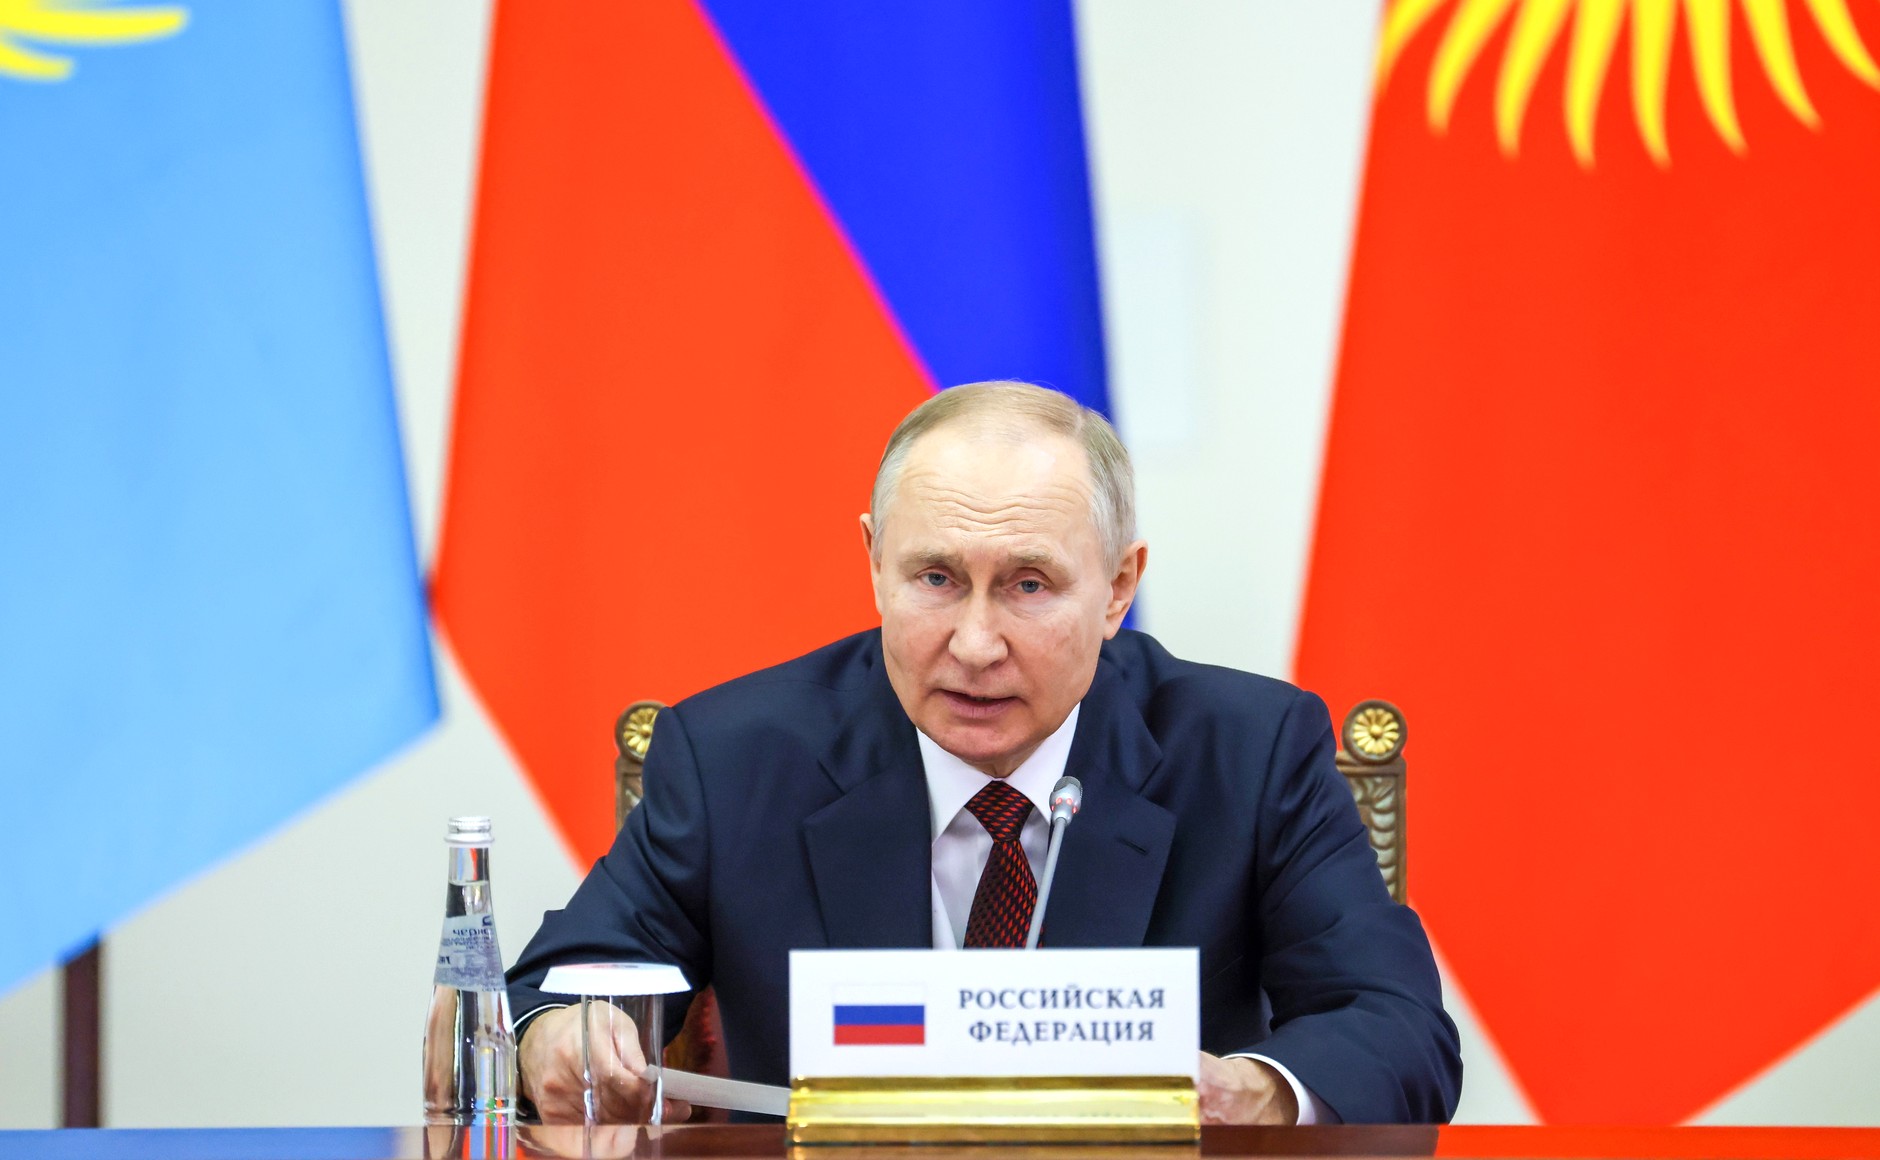 Владимир Путин: Развитие технологического потенциала стран–членов ЕврАзЭС — один из важнейших стратегических приоритетов совместной работы